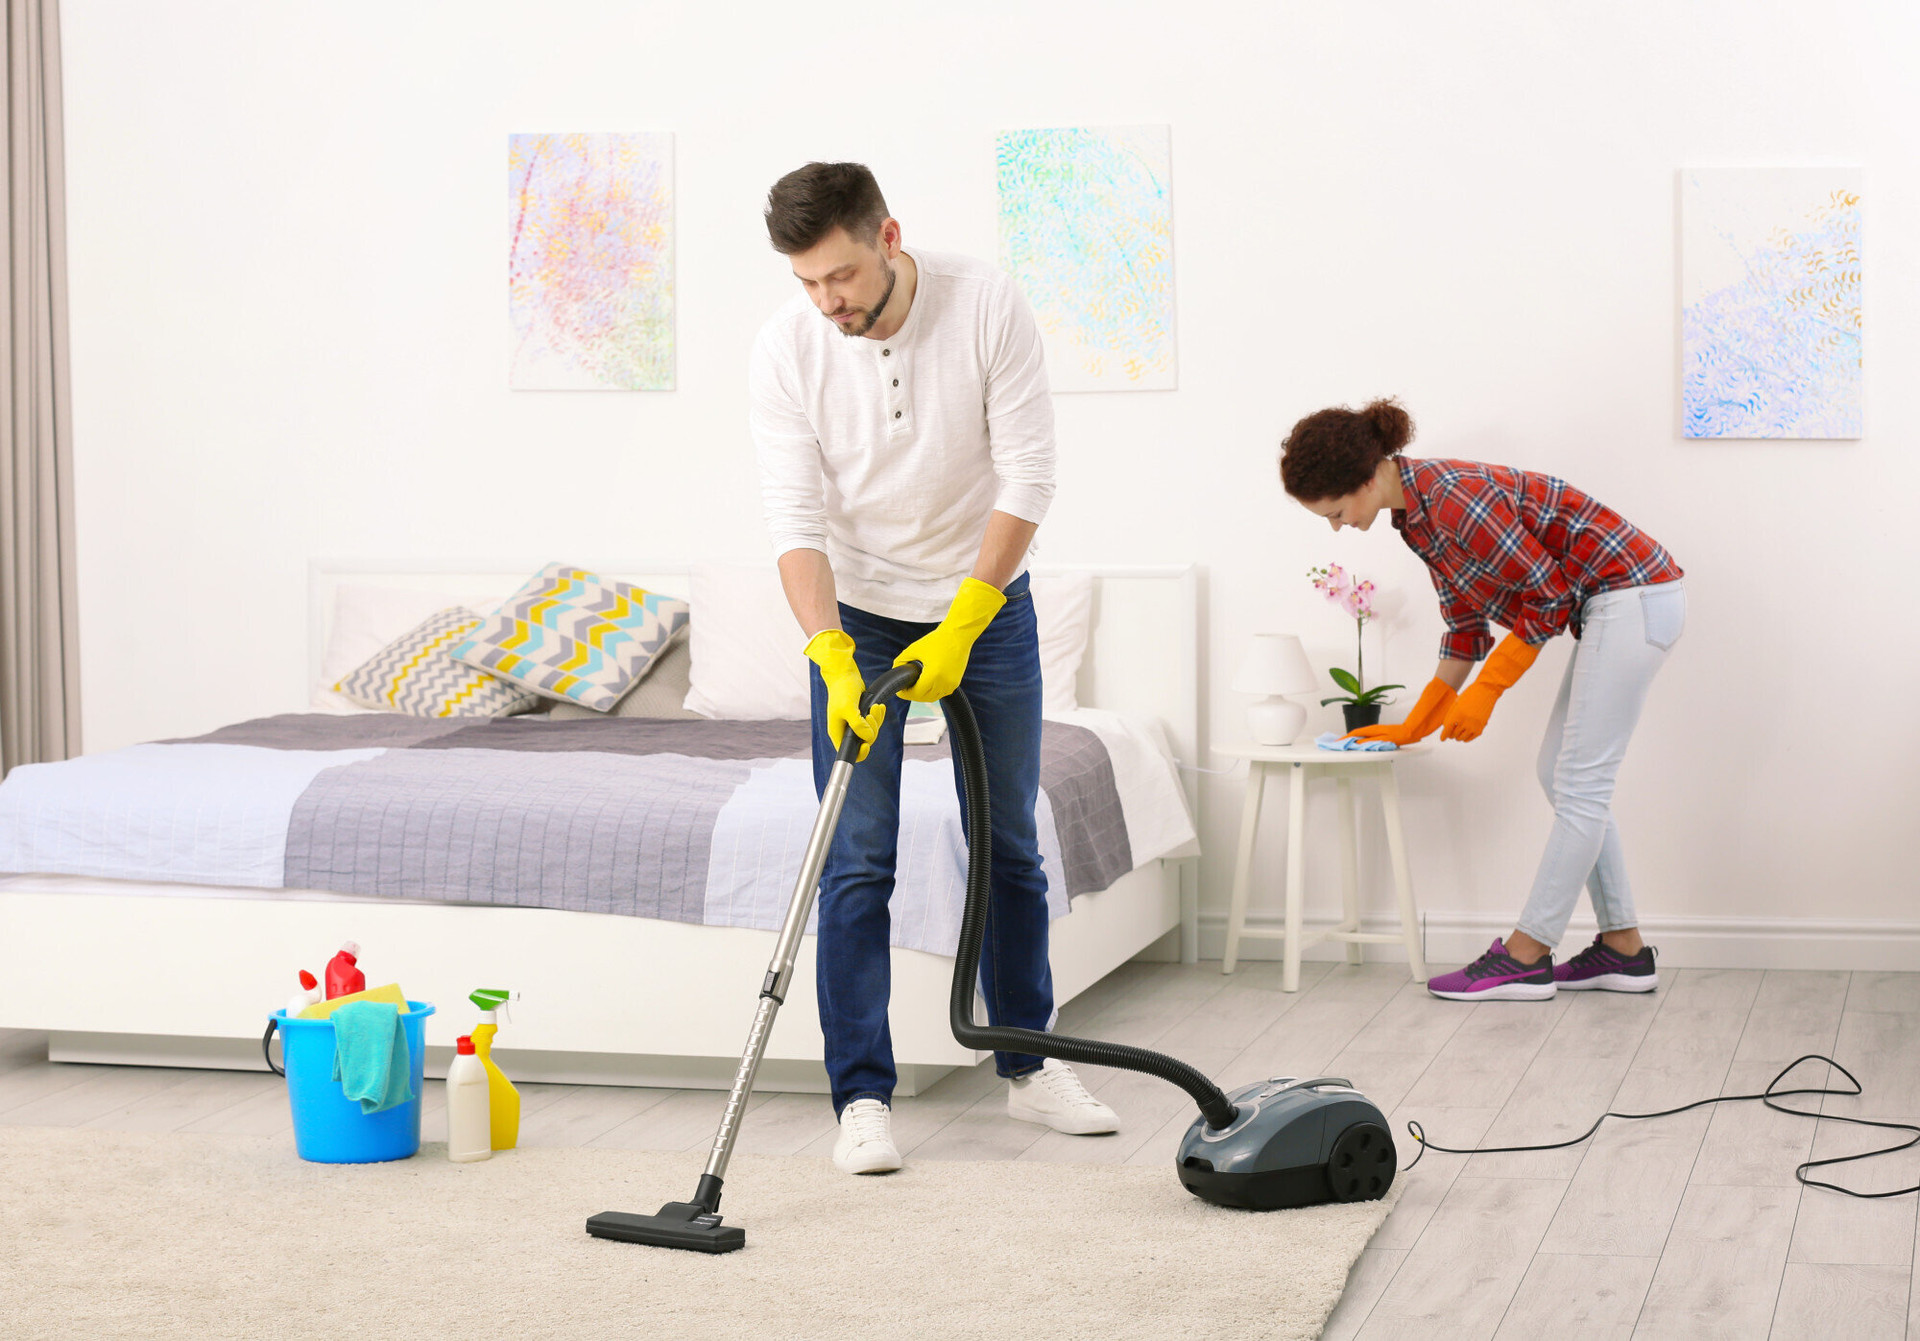 Dồn việc nhà đến cuối tuần mới làm, bạn sẽ cảm thấy mệt mỏi hơn (Ảnh: Cleaning Service)